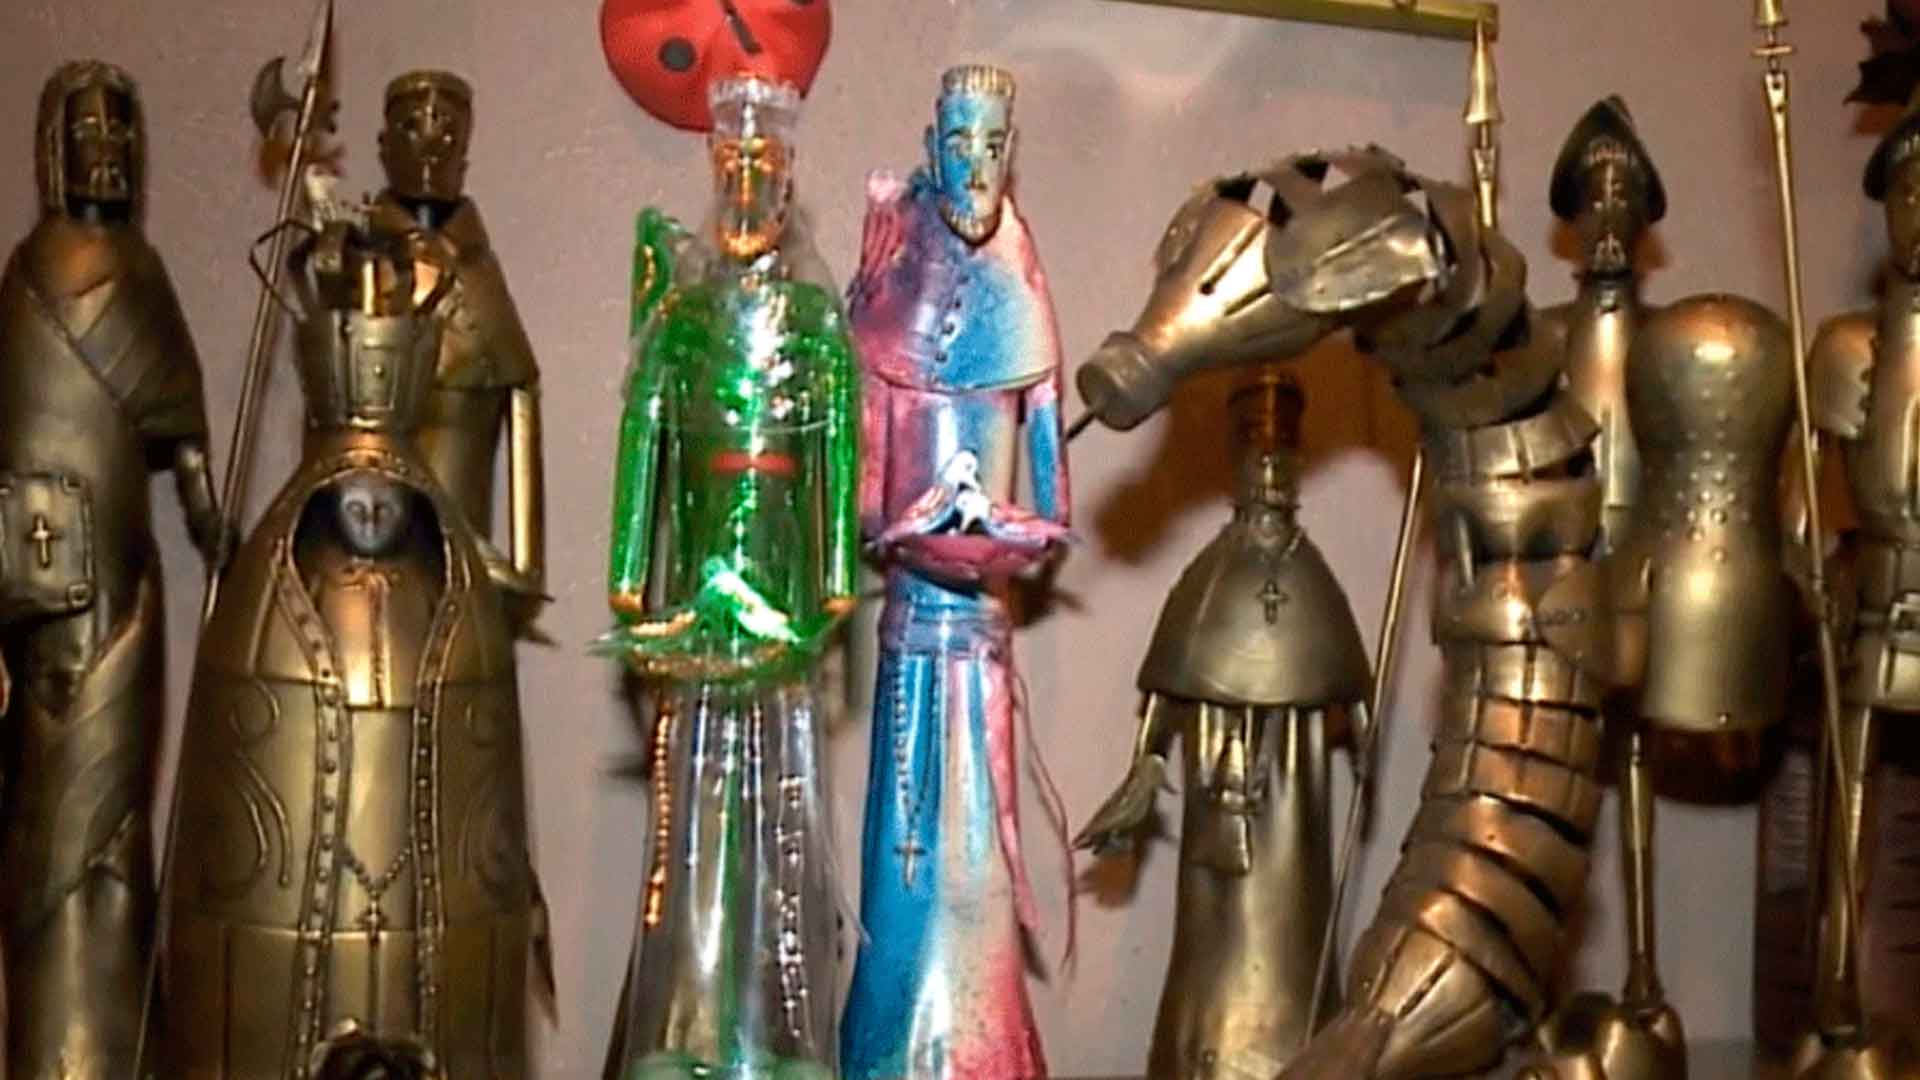 Obras de arte metalizadas feitas com garrafas pet em Jundiaí